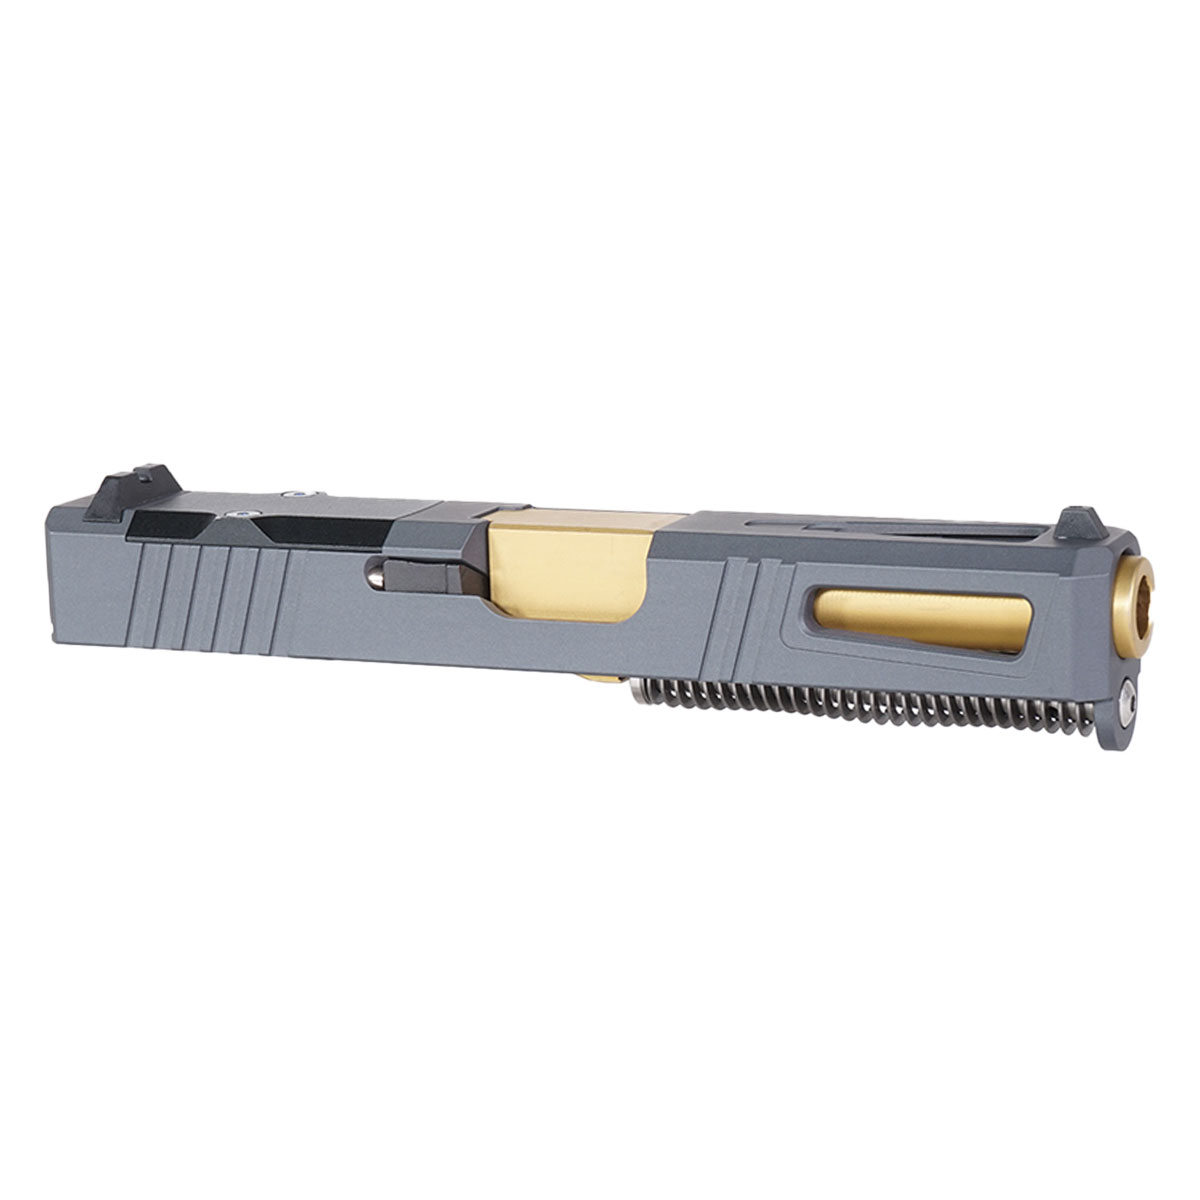 DDS 'Gold Strike' 9mm Complete Slide Kit - Glock 19 Gen 1-3 Compatible